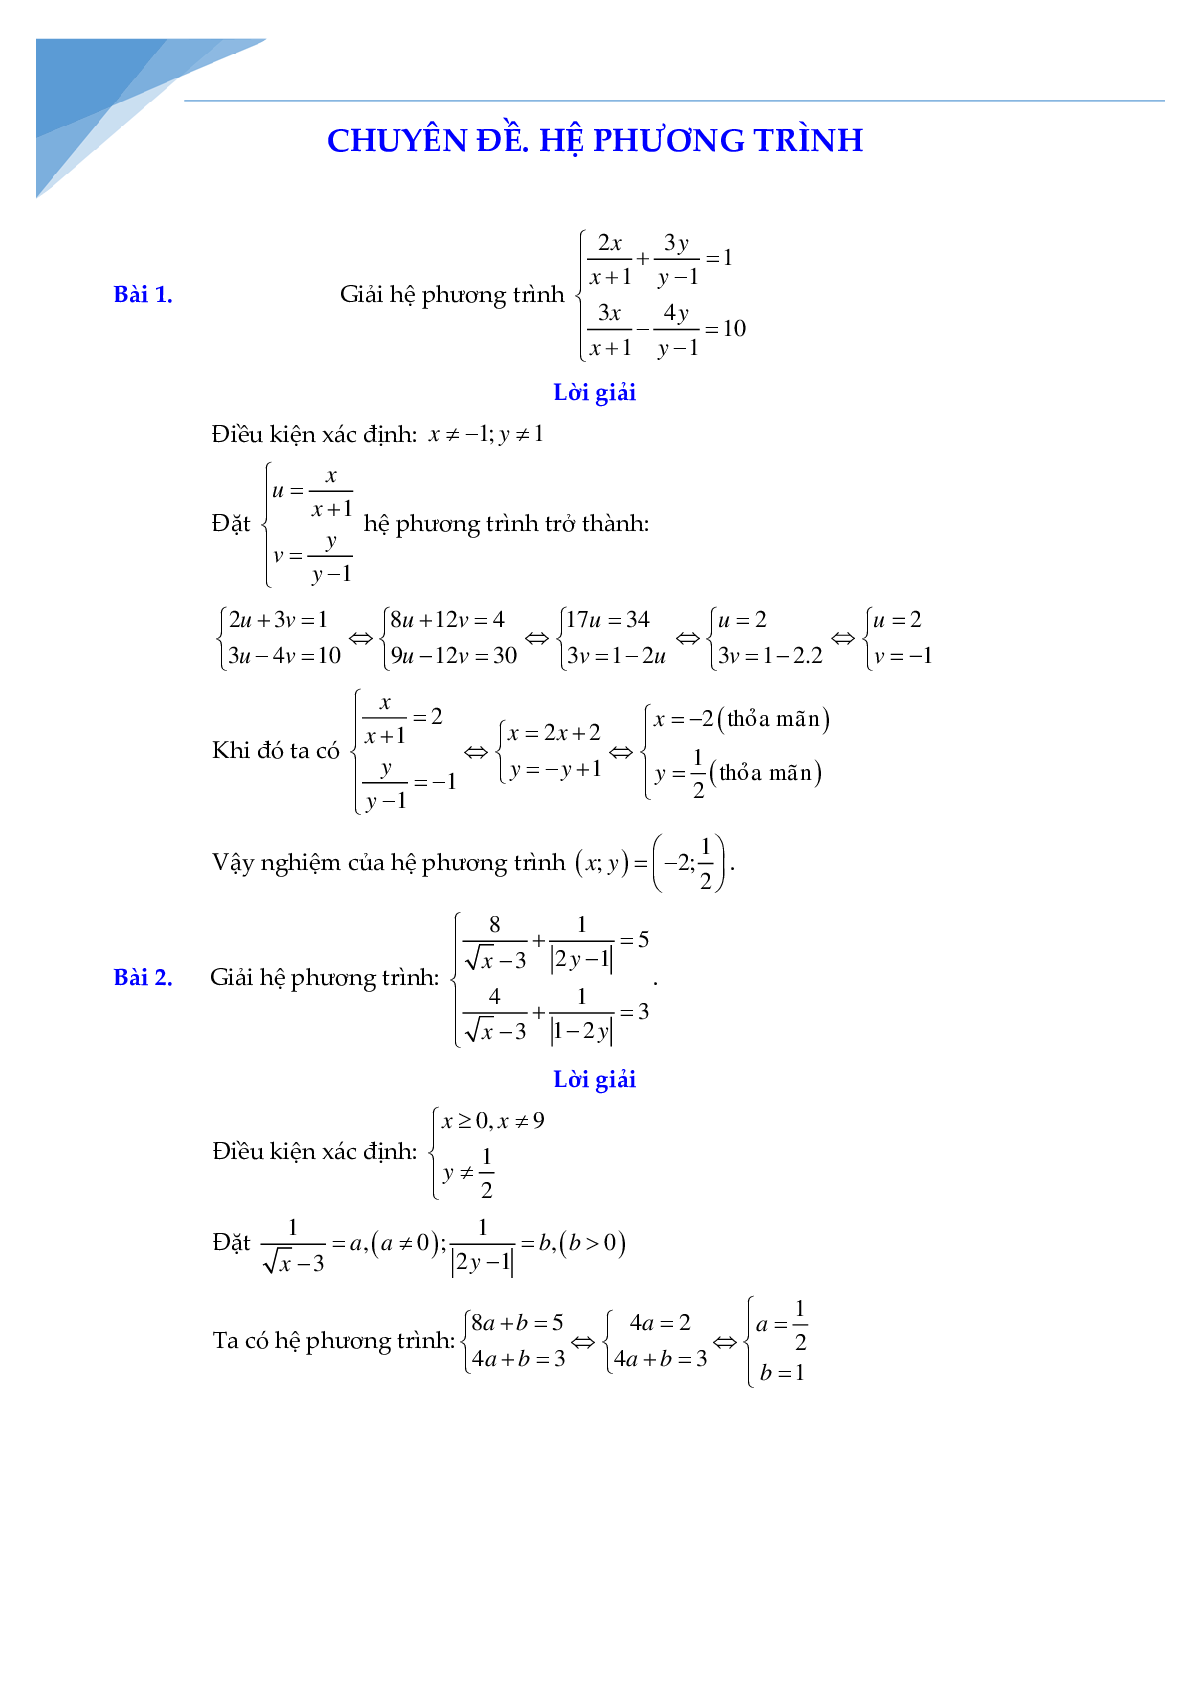 Chuyên đề hệ phương trình bồi dưỡng học sinh giỏi toán (trang 1)